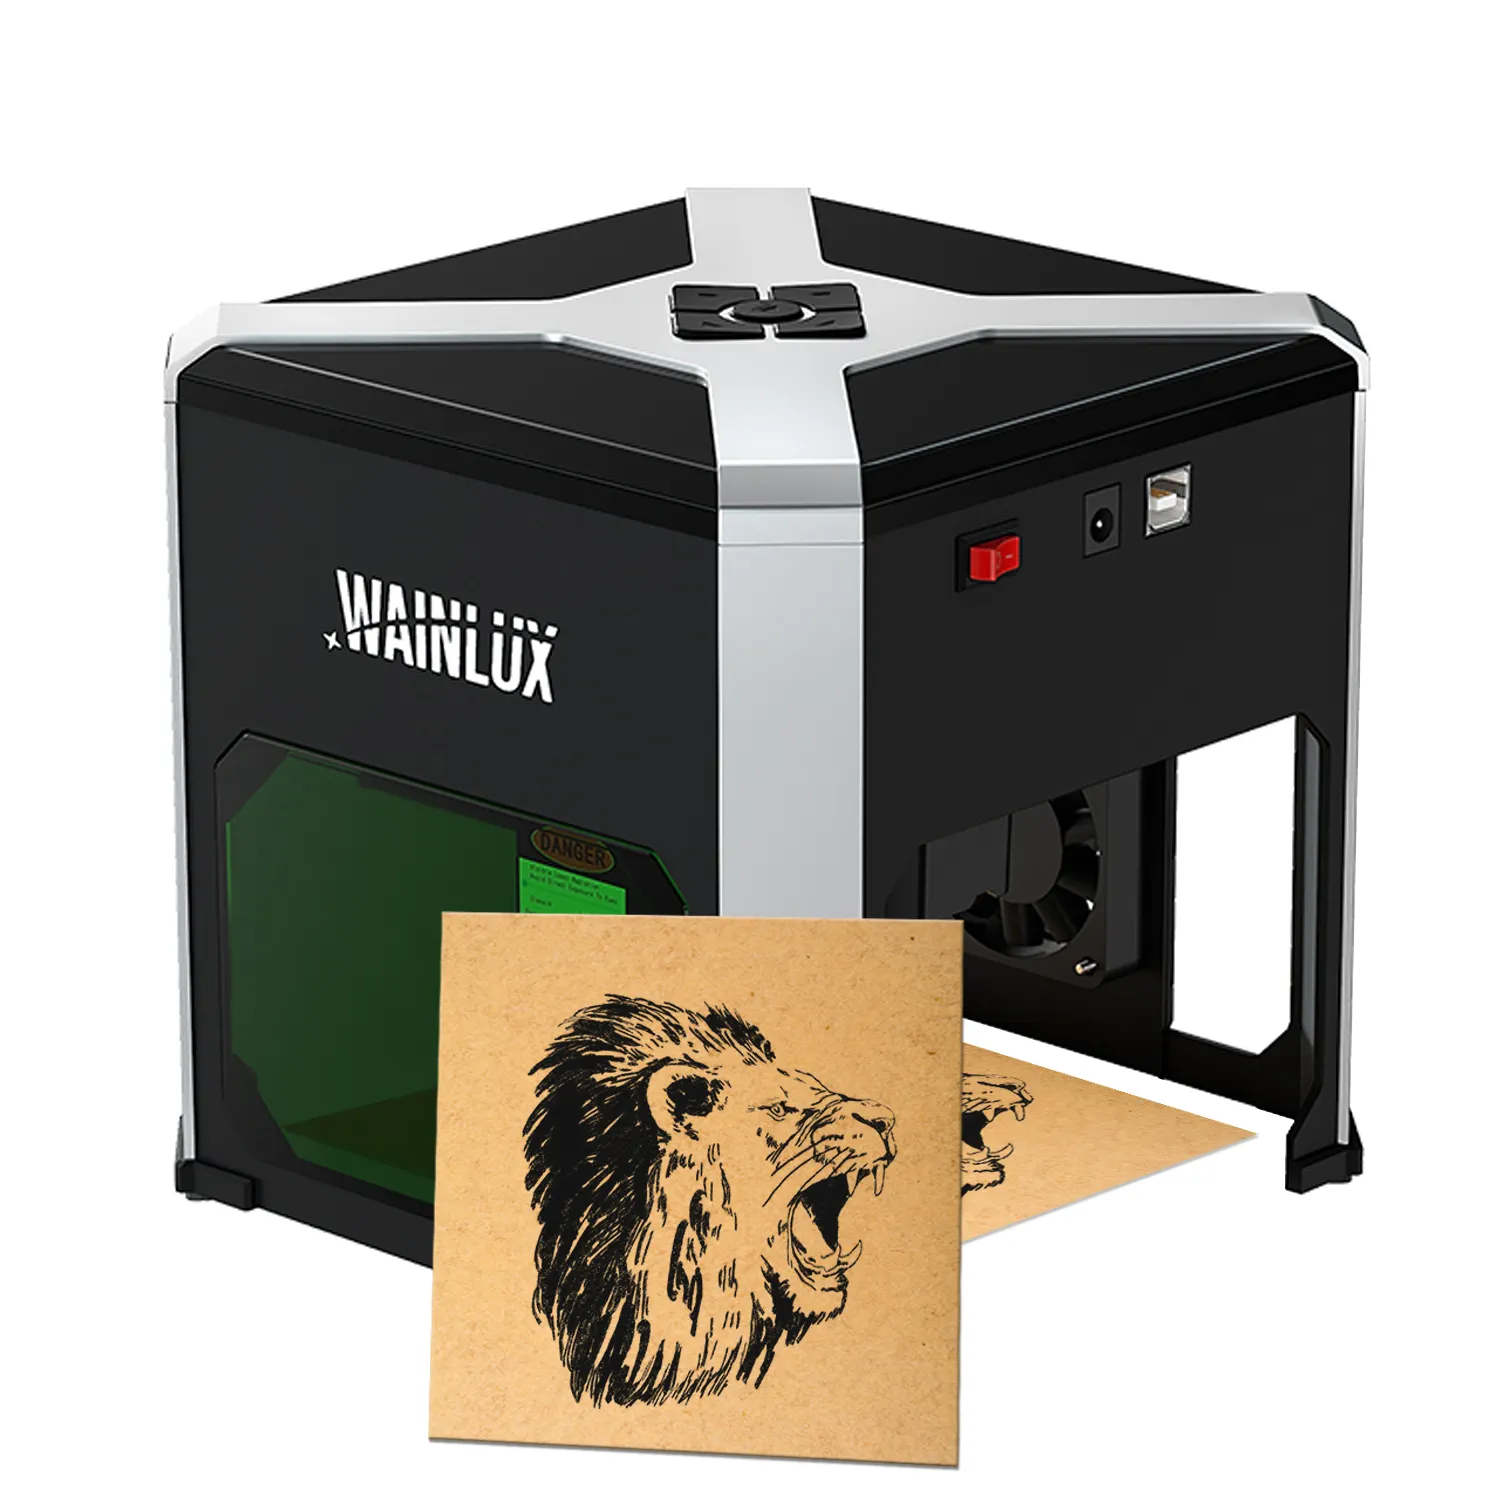 WAINLUX K6 macchina per incisione Laser CNC 3000mW Mini stampante Laser Desktop incisore Lazer portatile con connessione Win e Wifi